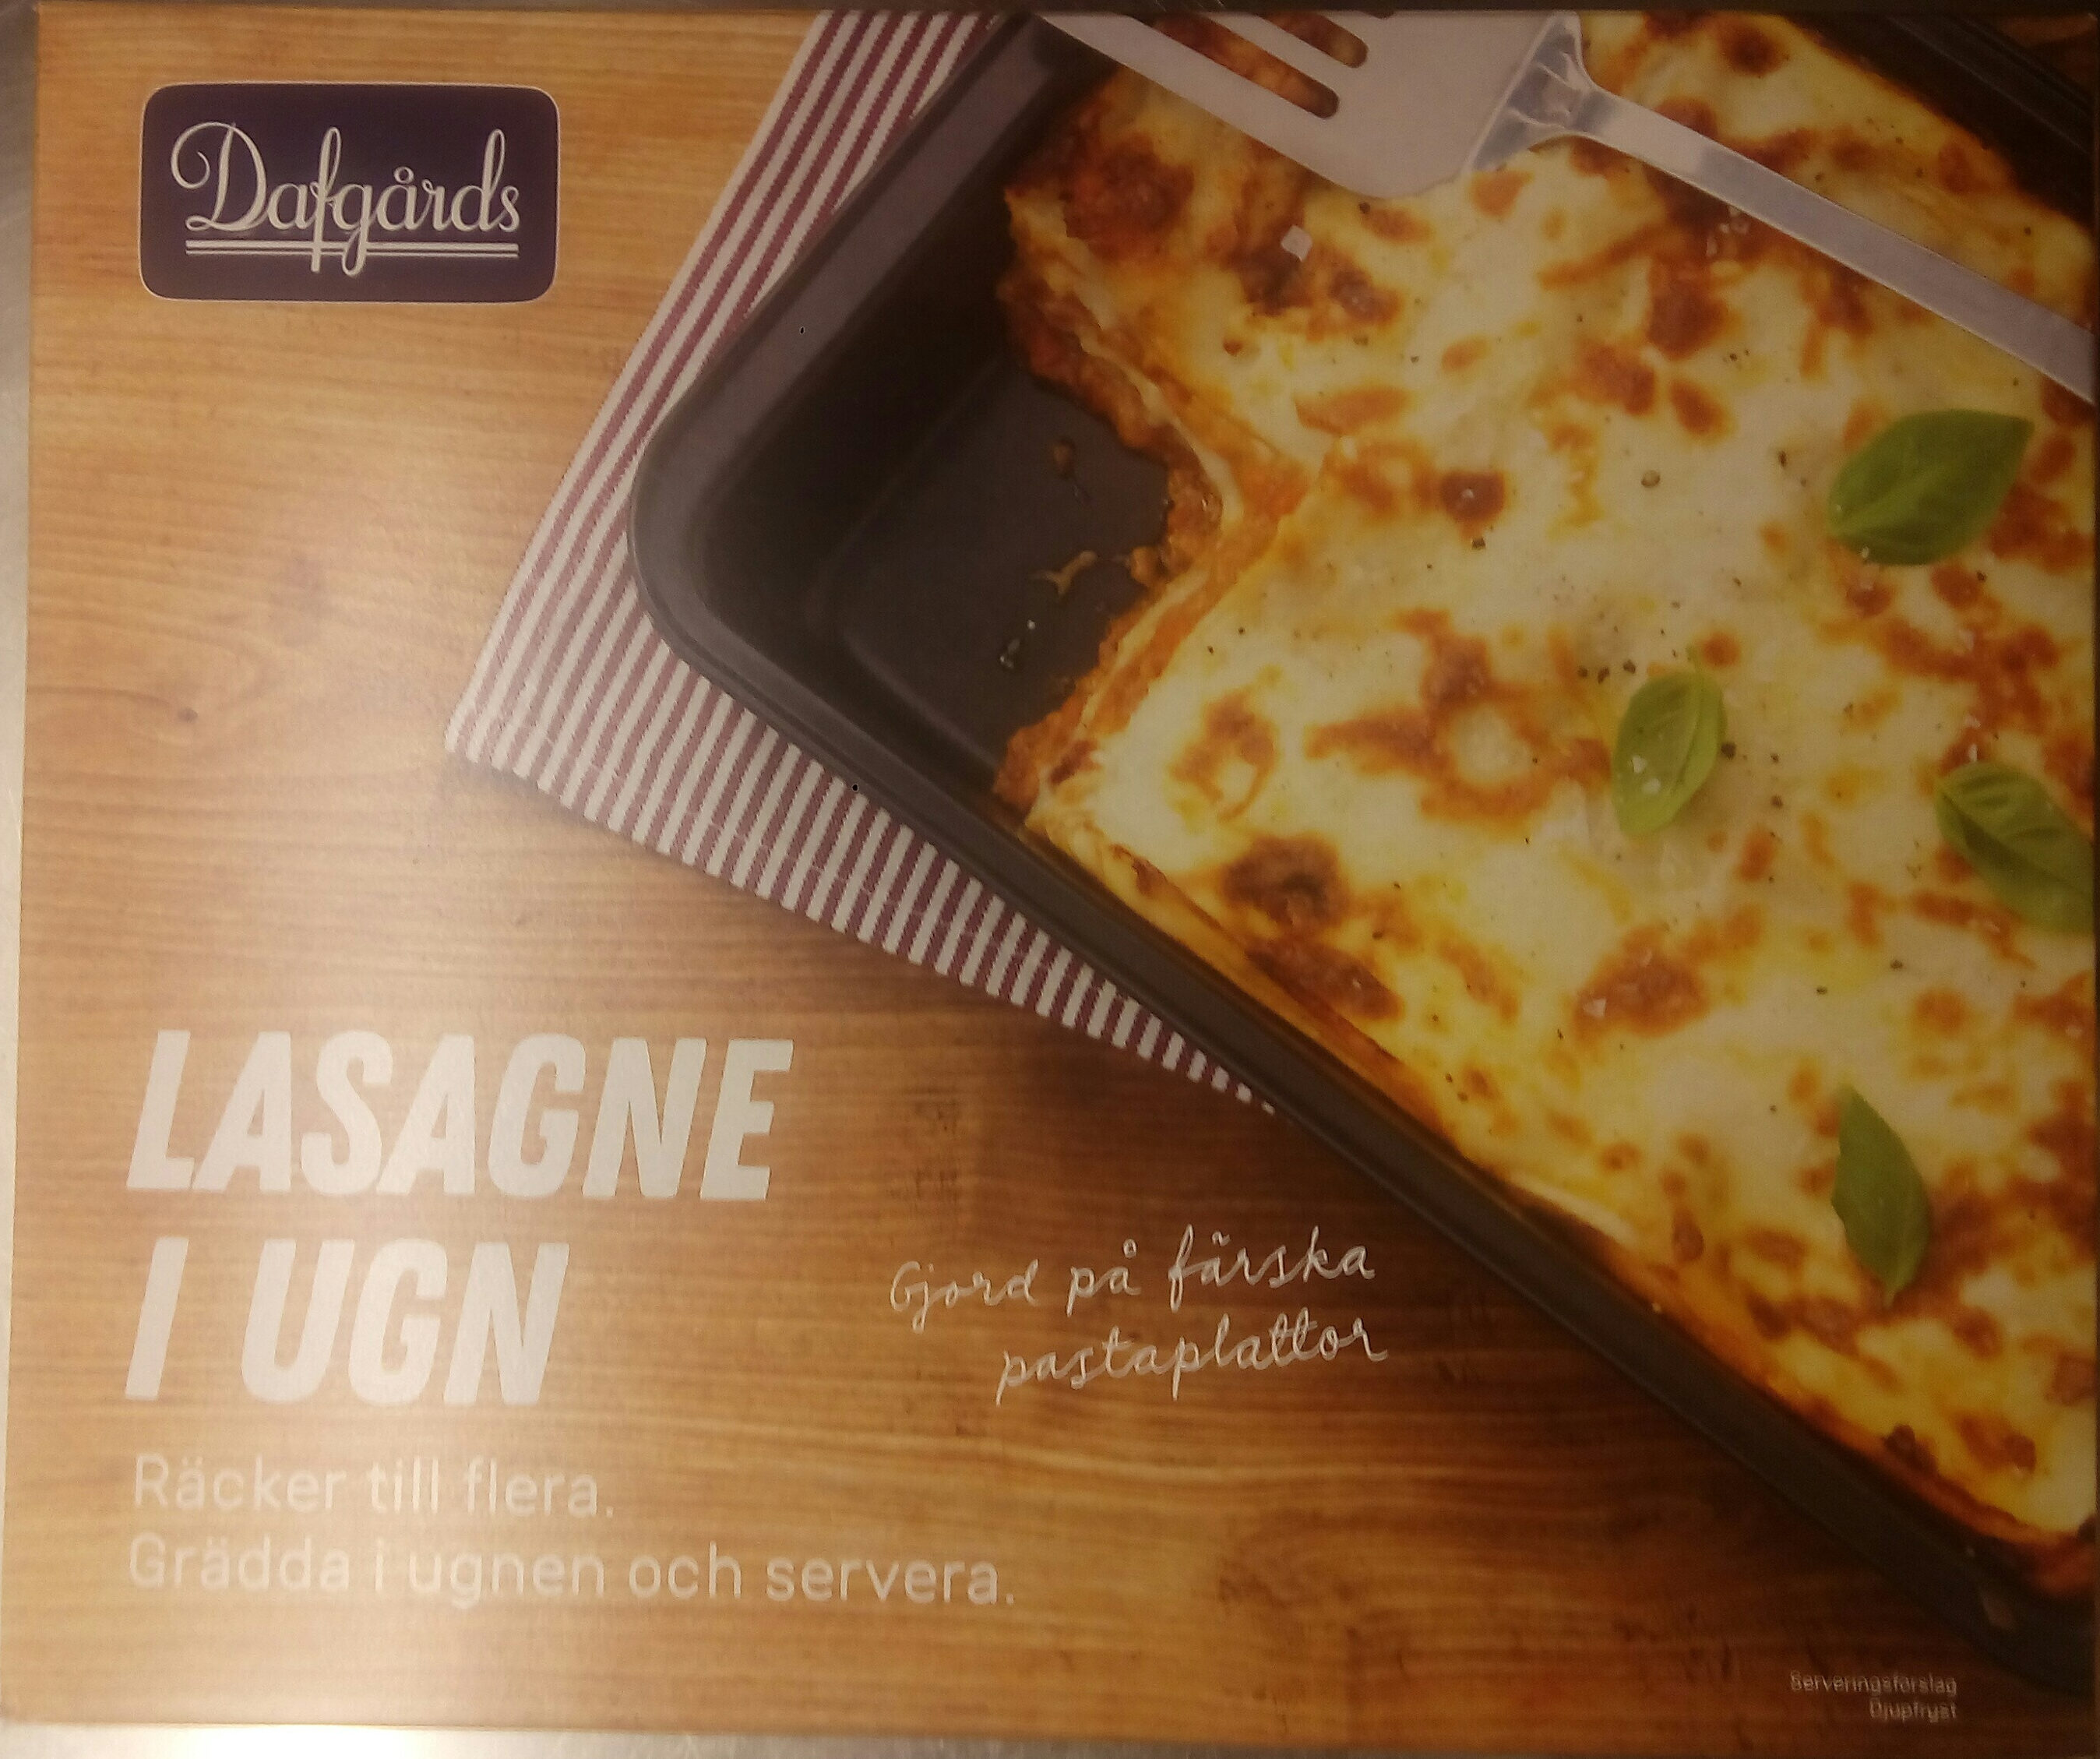 Dafgårds Lasagne i ugn - Produkt